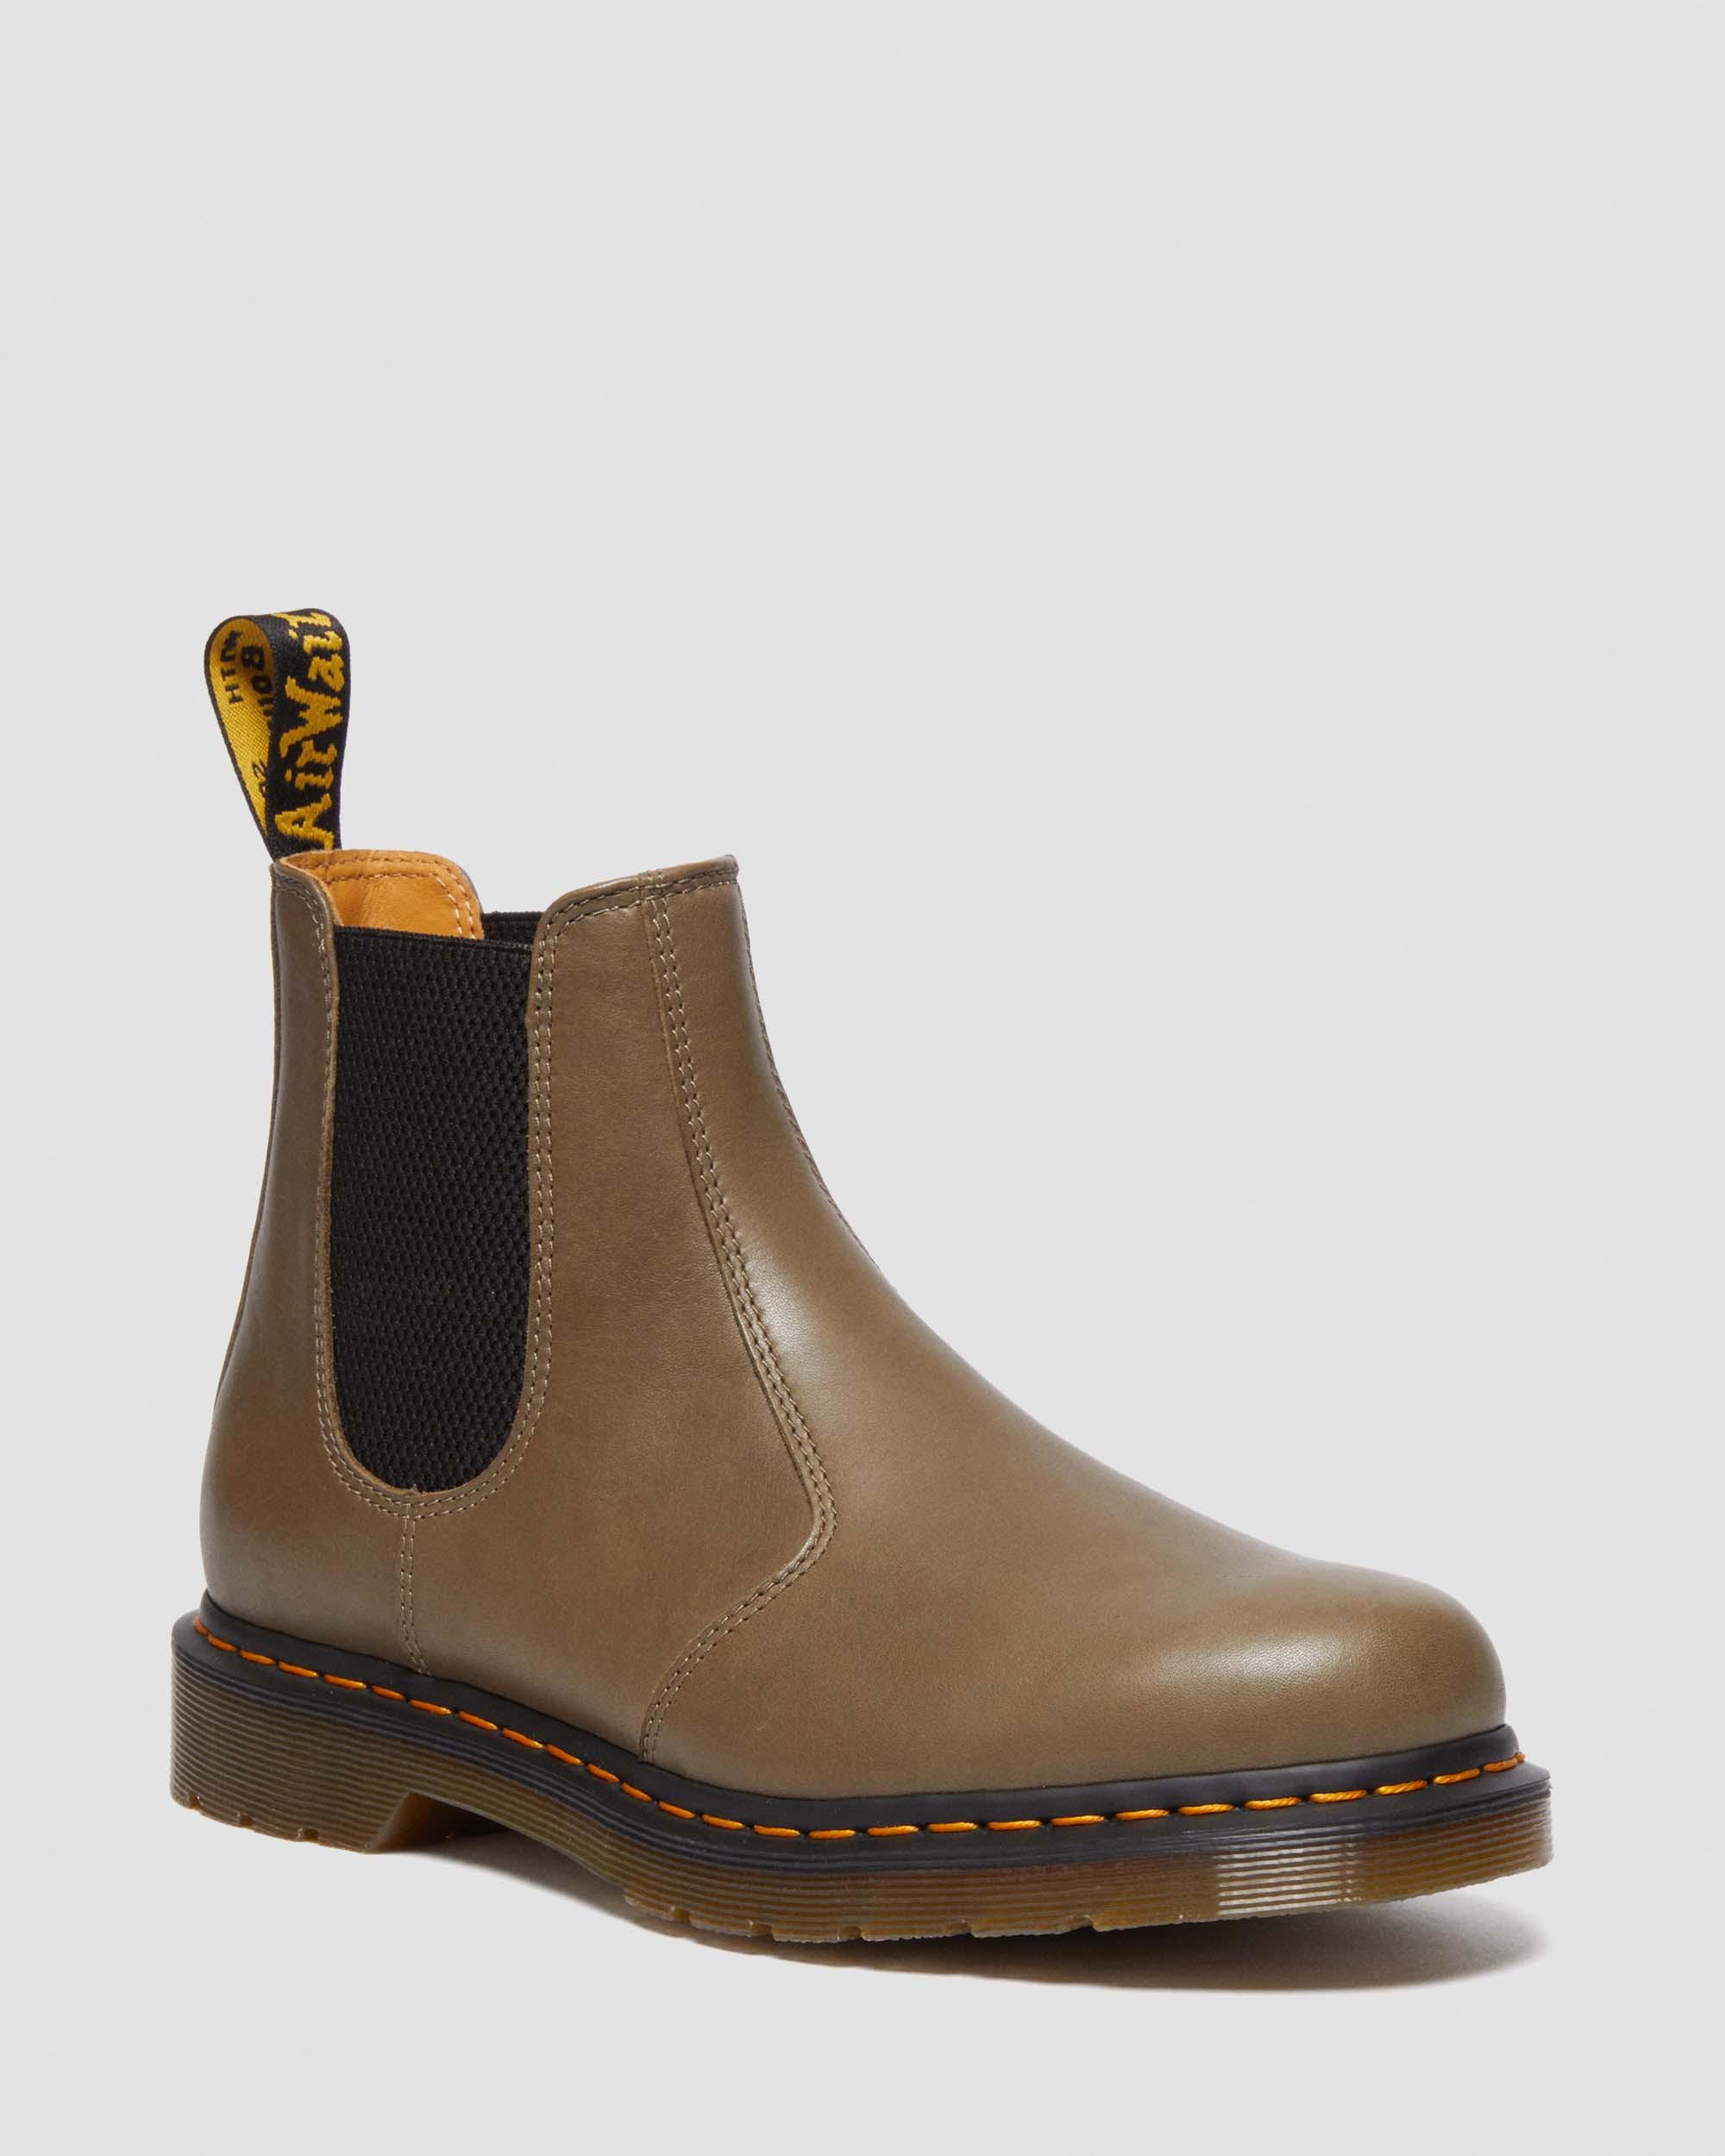 lejesoldat emne Lake Taupo 2976 Carrara Leather Chelsea Boots | Dr. Martens